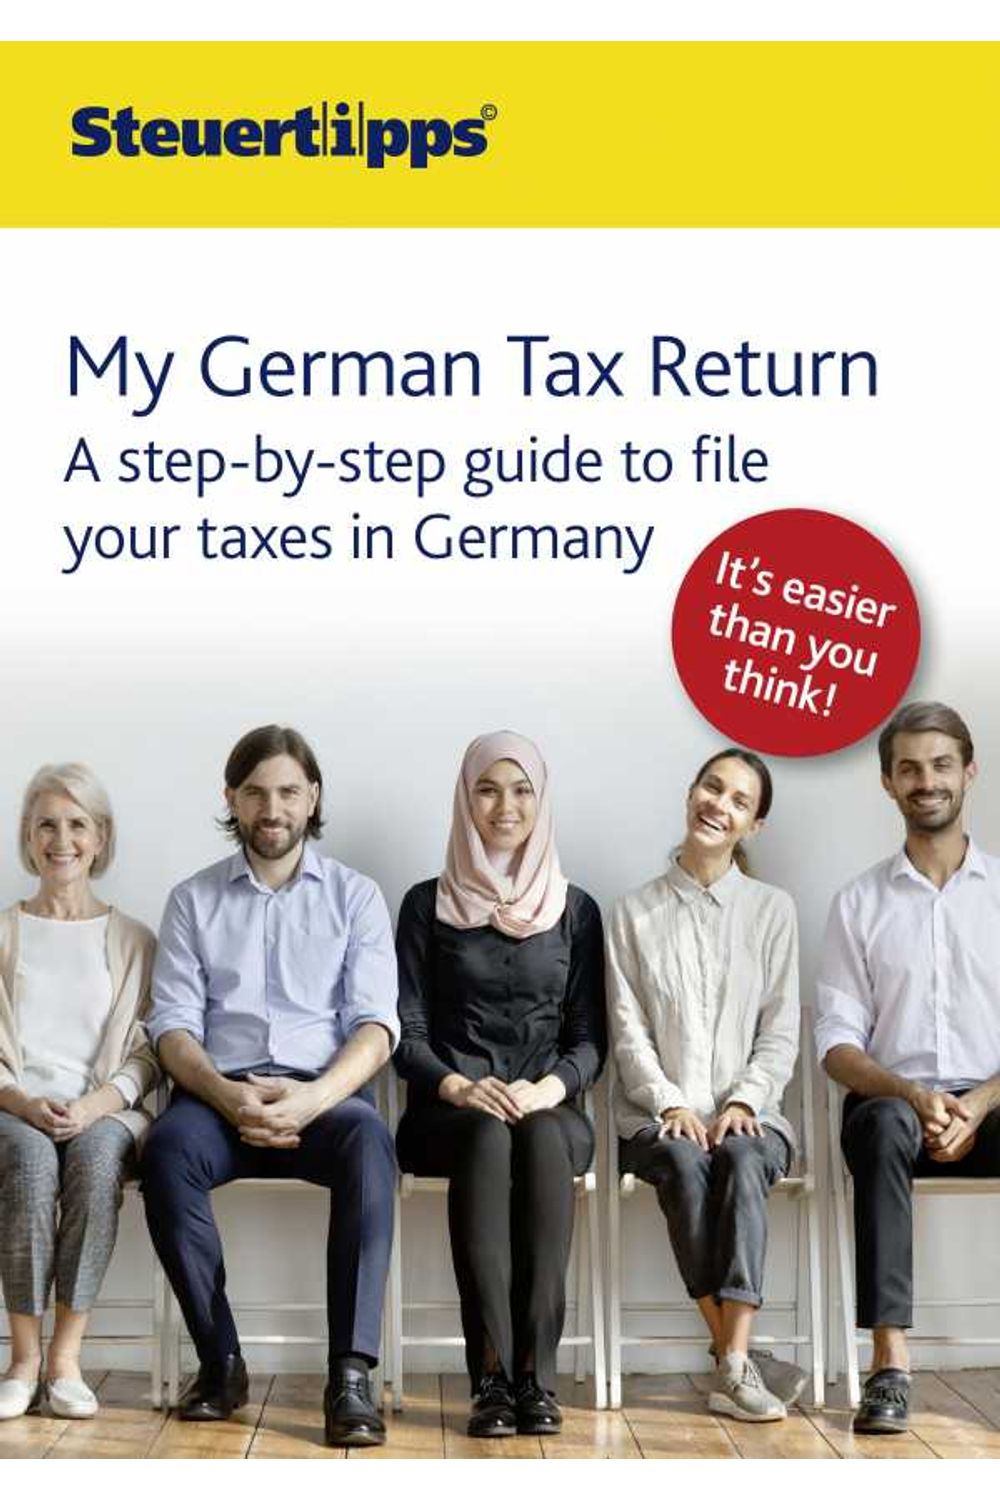 bw-my-german-tax-return-akademische-arbeitsgemeinschaft-verlagsgesellschaft-9783965331310